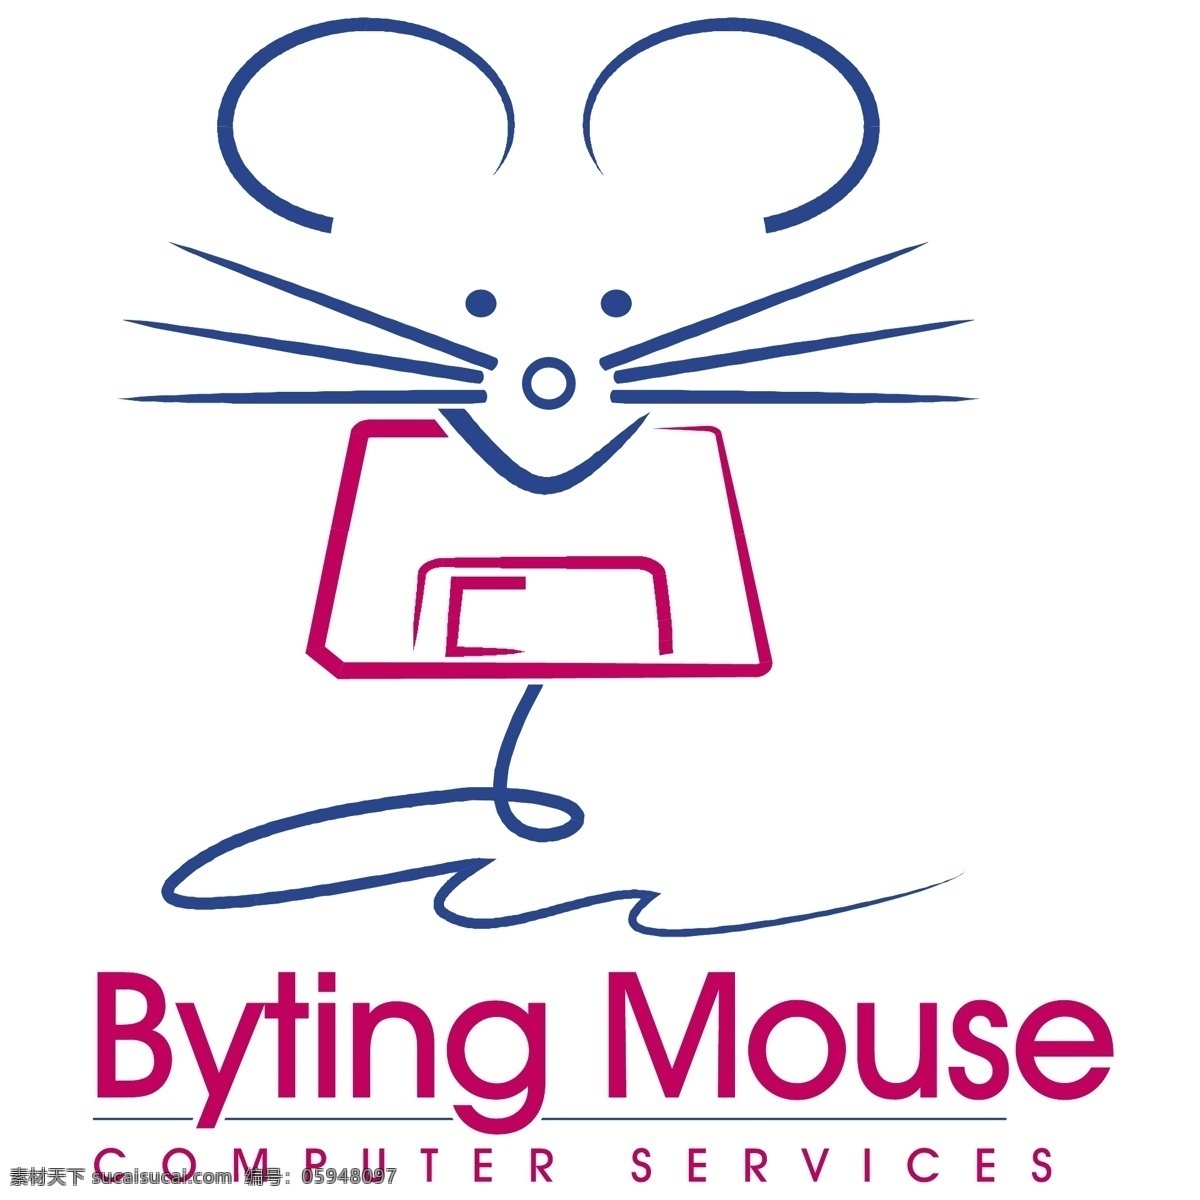 mouse 耗子 老鼠标志 可爱老鼠 卡通老鼠 漫画老鼠 厨师老鼠 幼儿园 米老鼠 鼠标 卡通设计